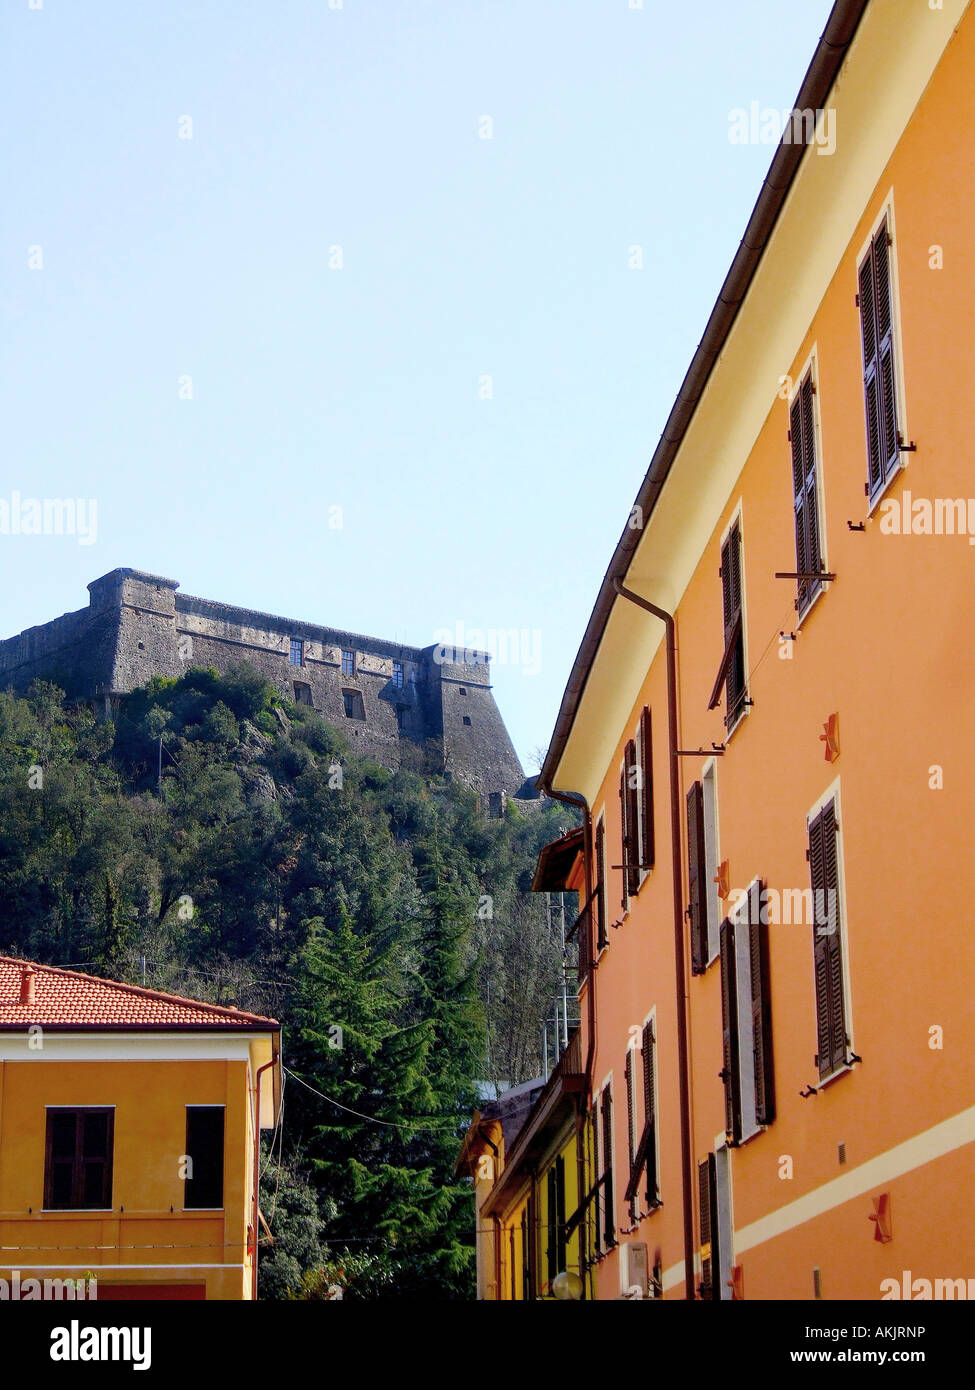 Brunella castle, Aulla, Tuscany, Italy Stock Photo